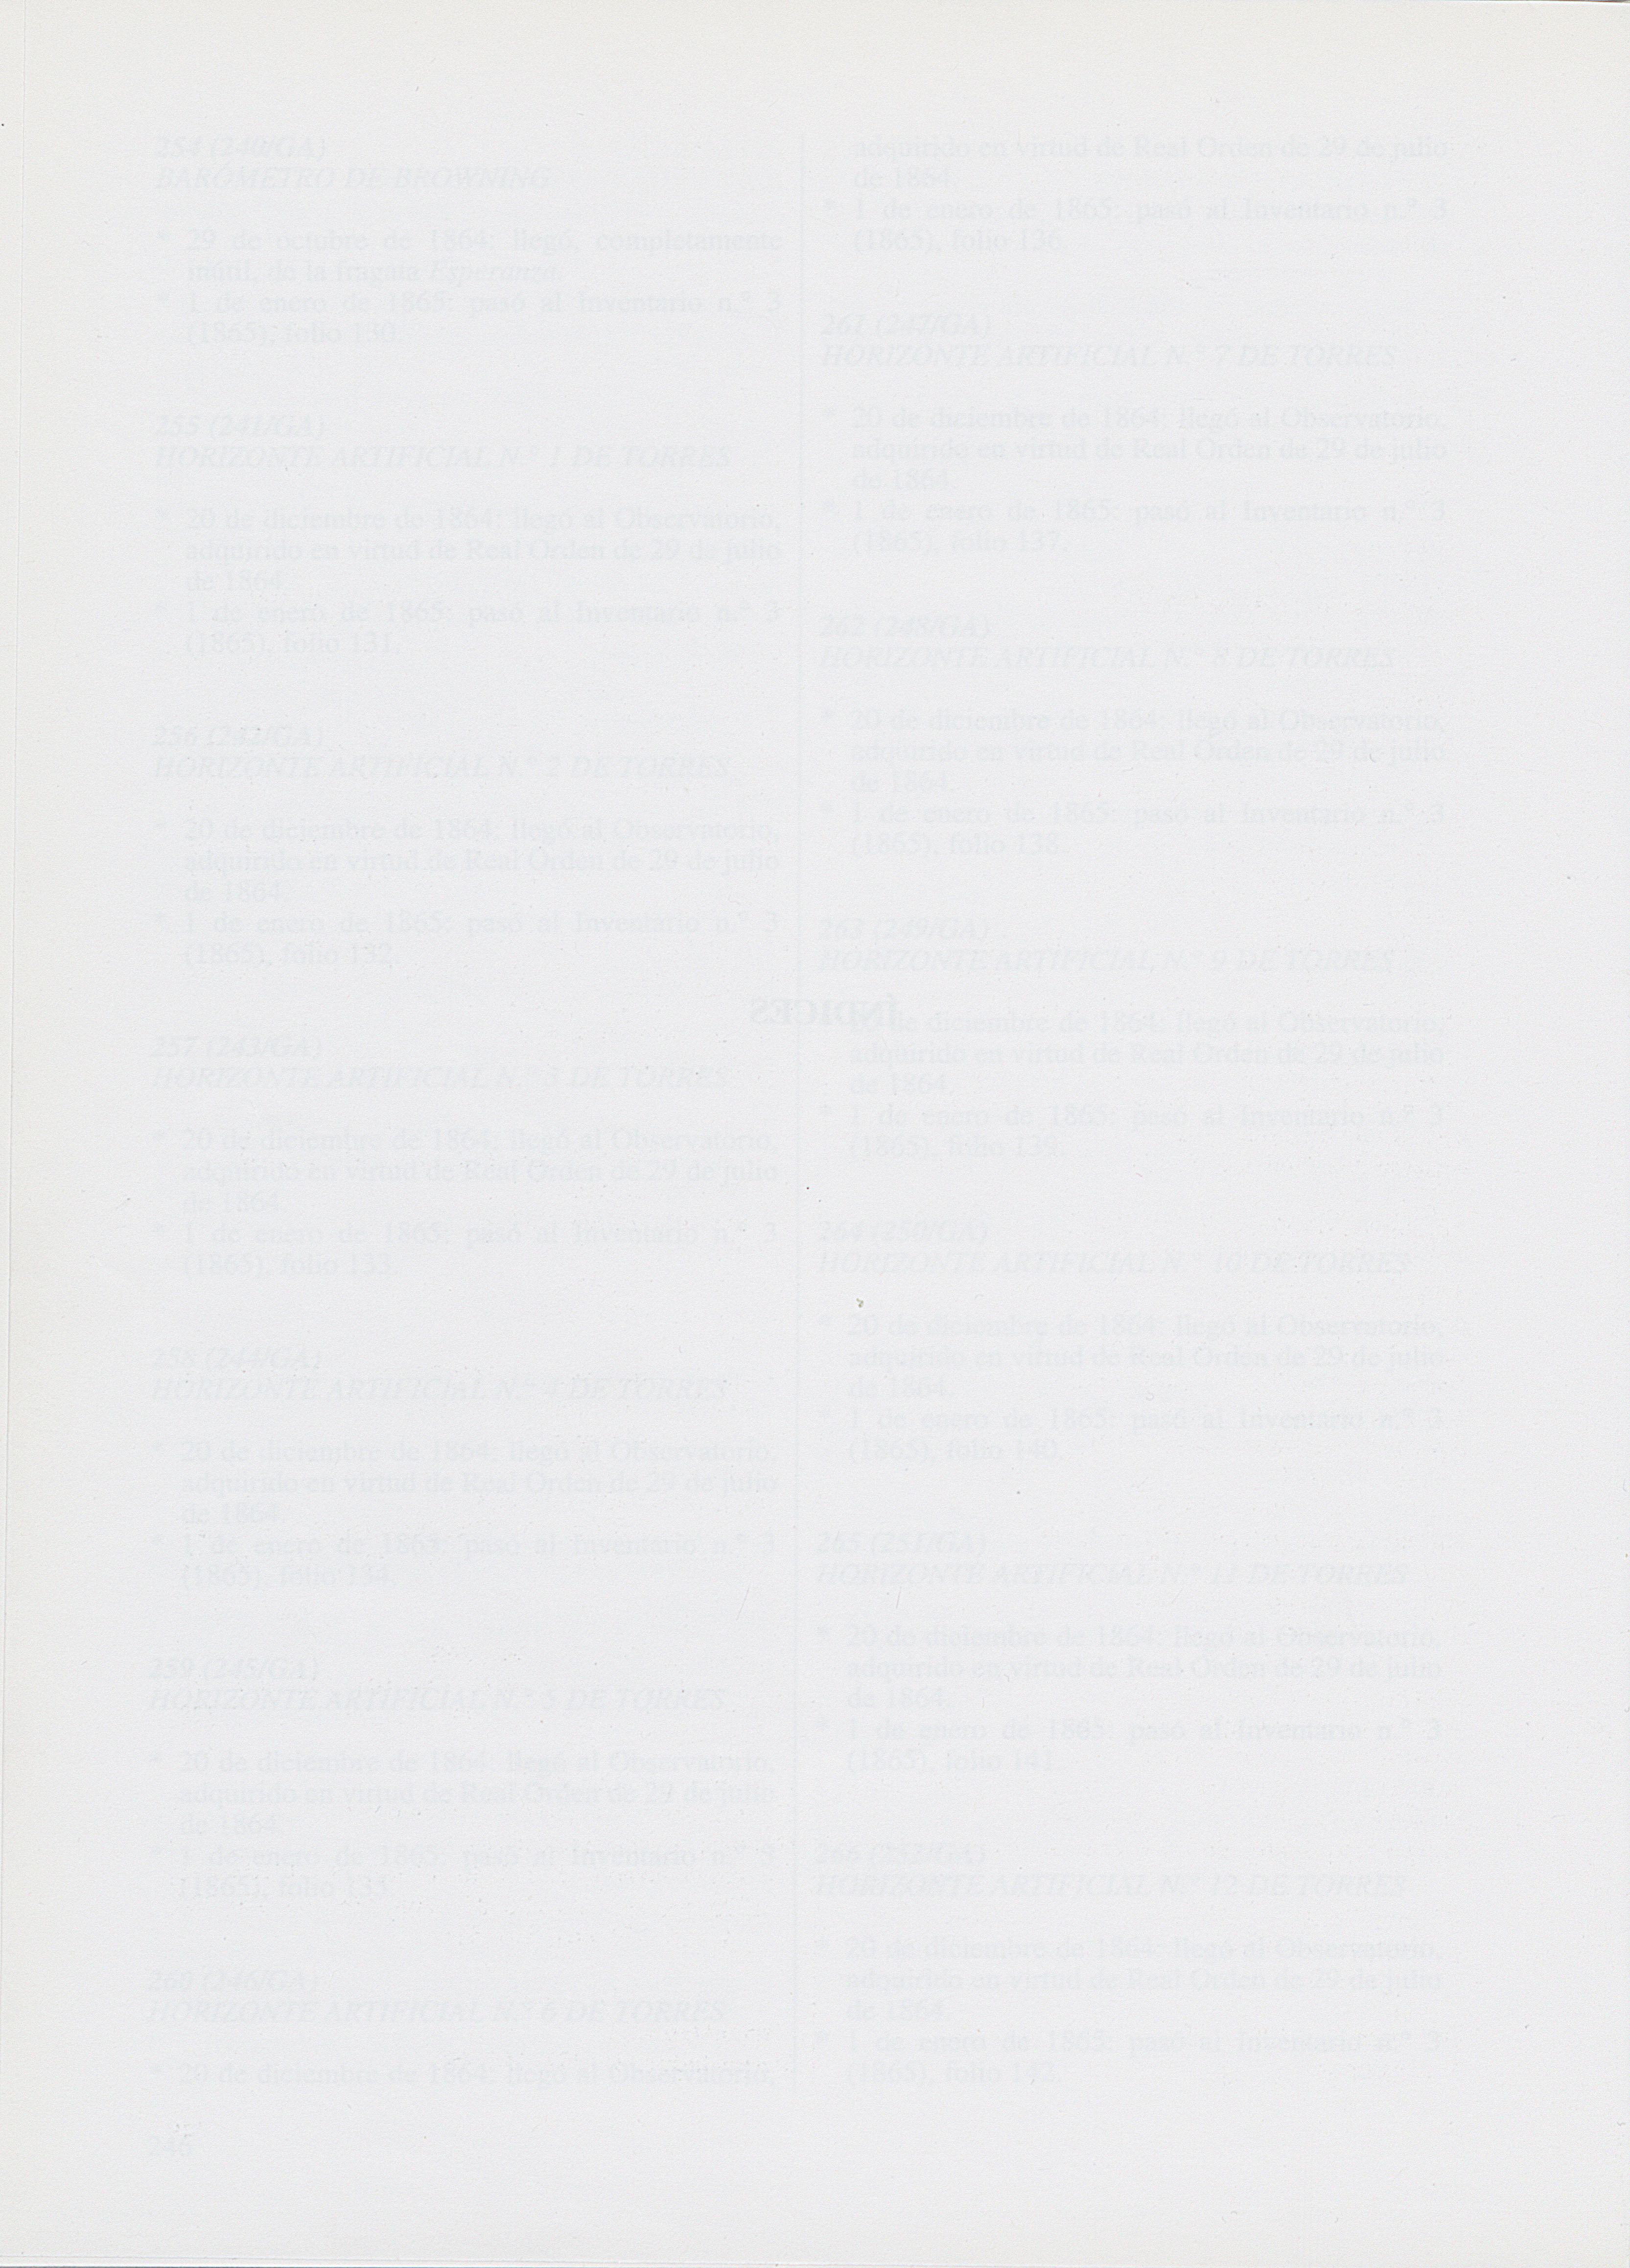 Página 290